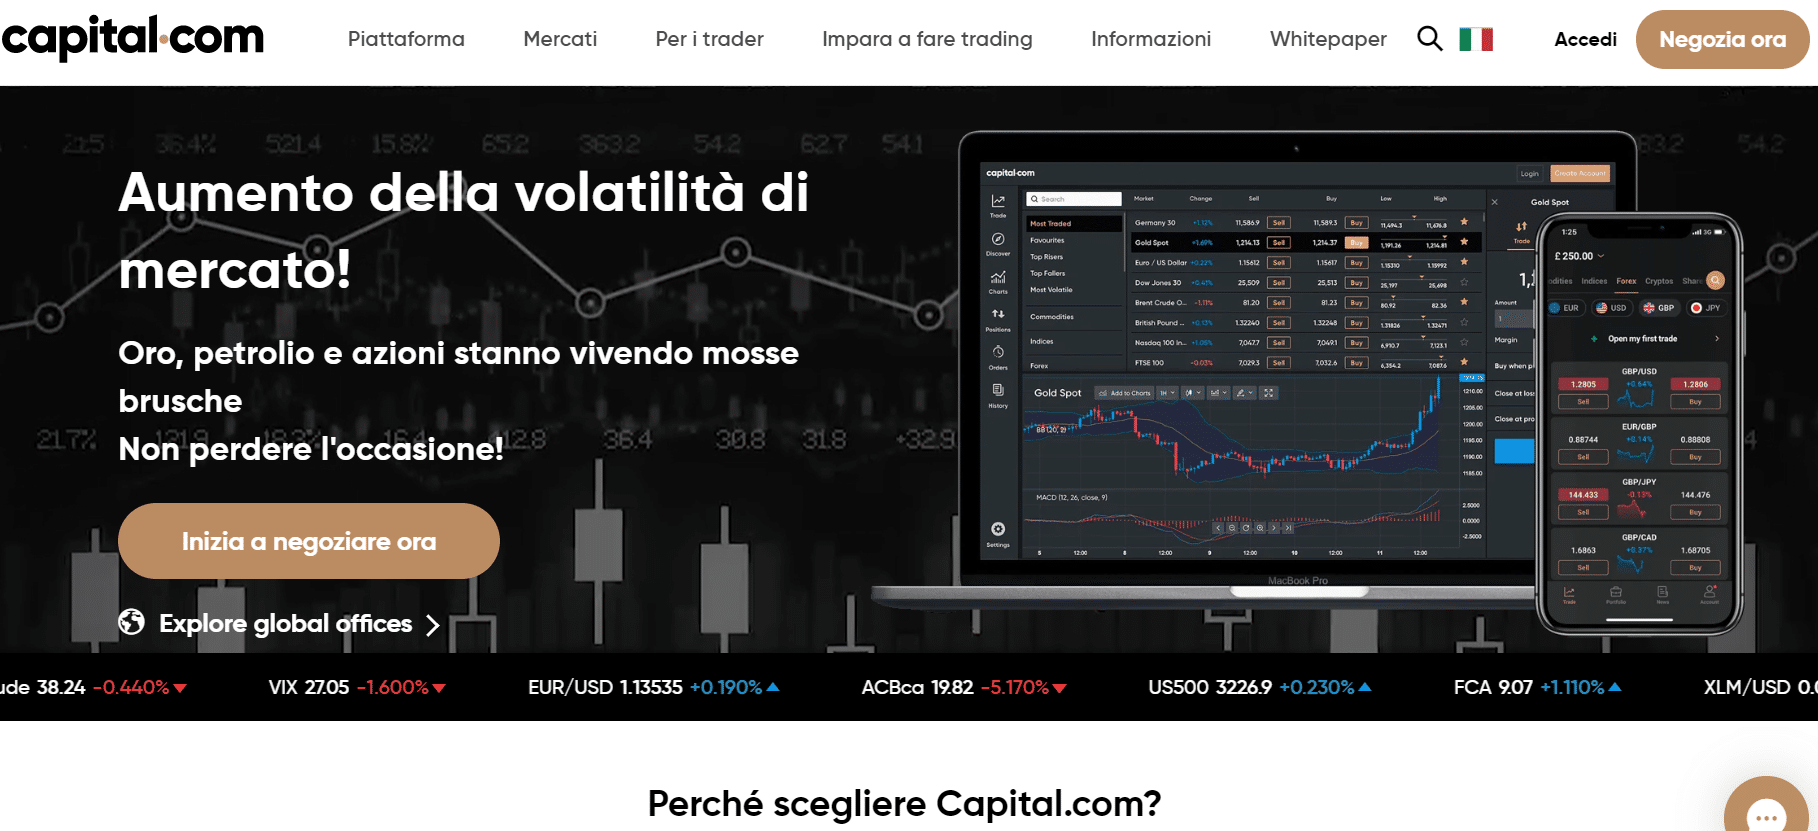 Capital.com investire sul Forex